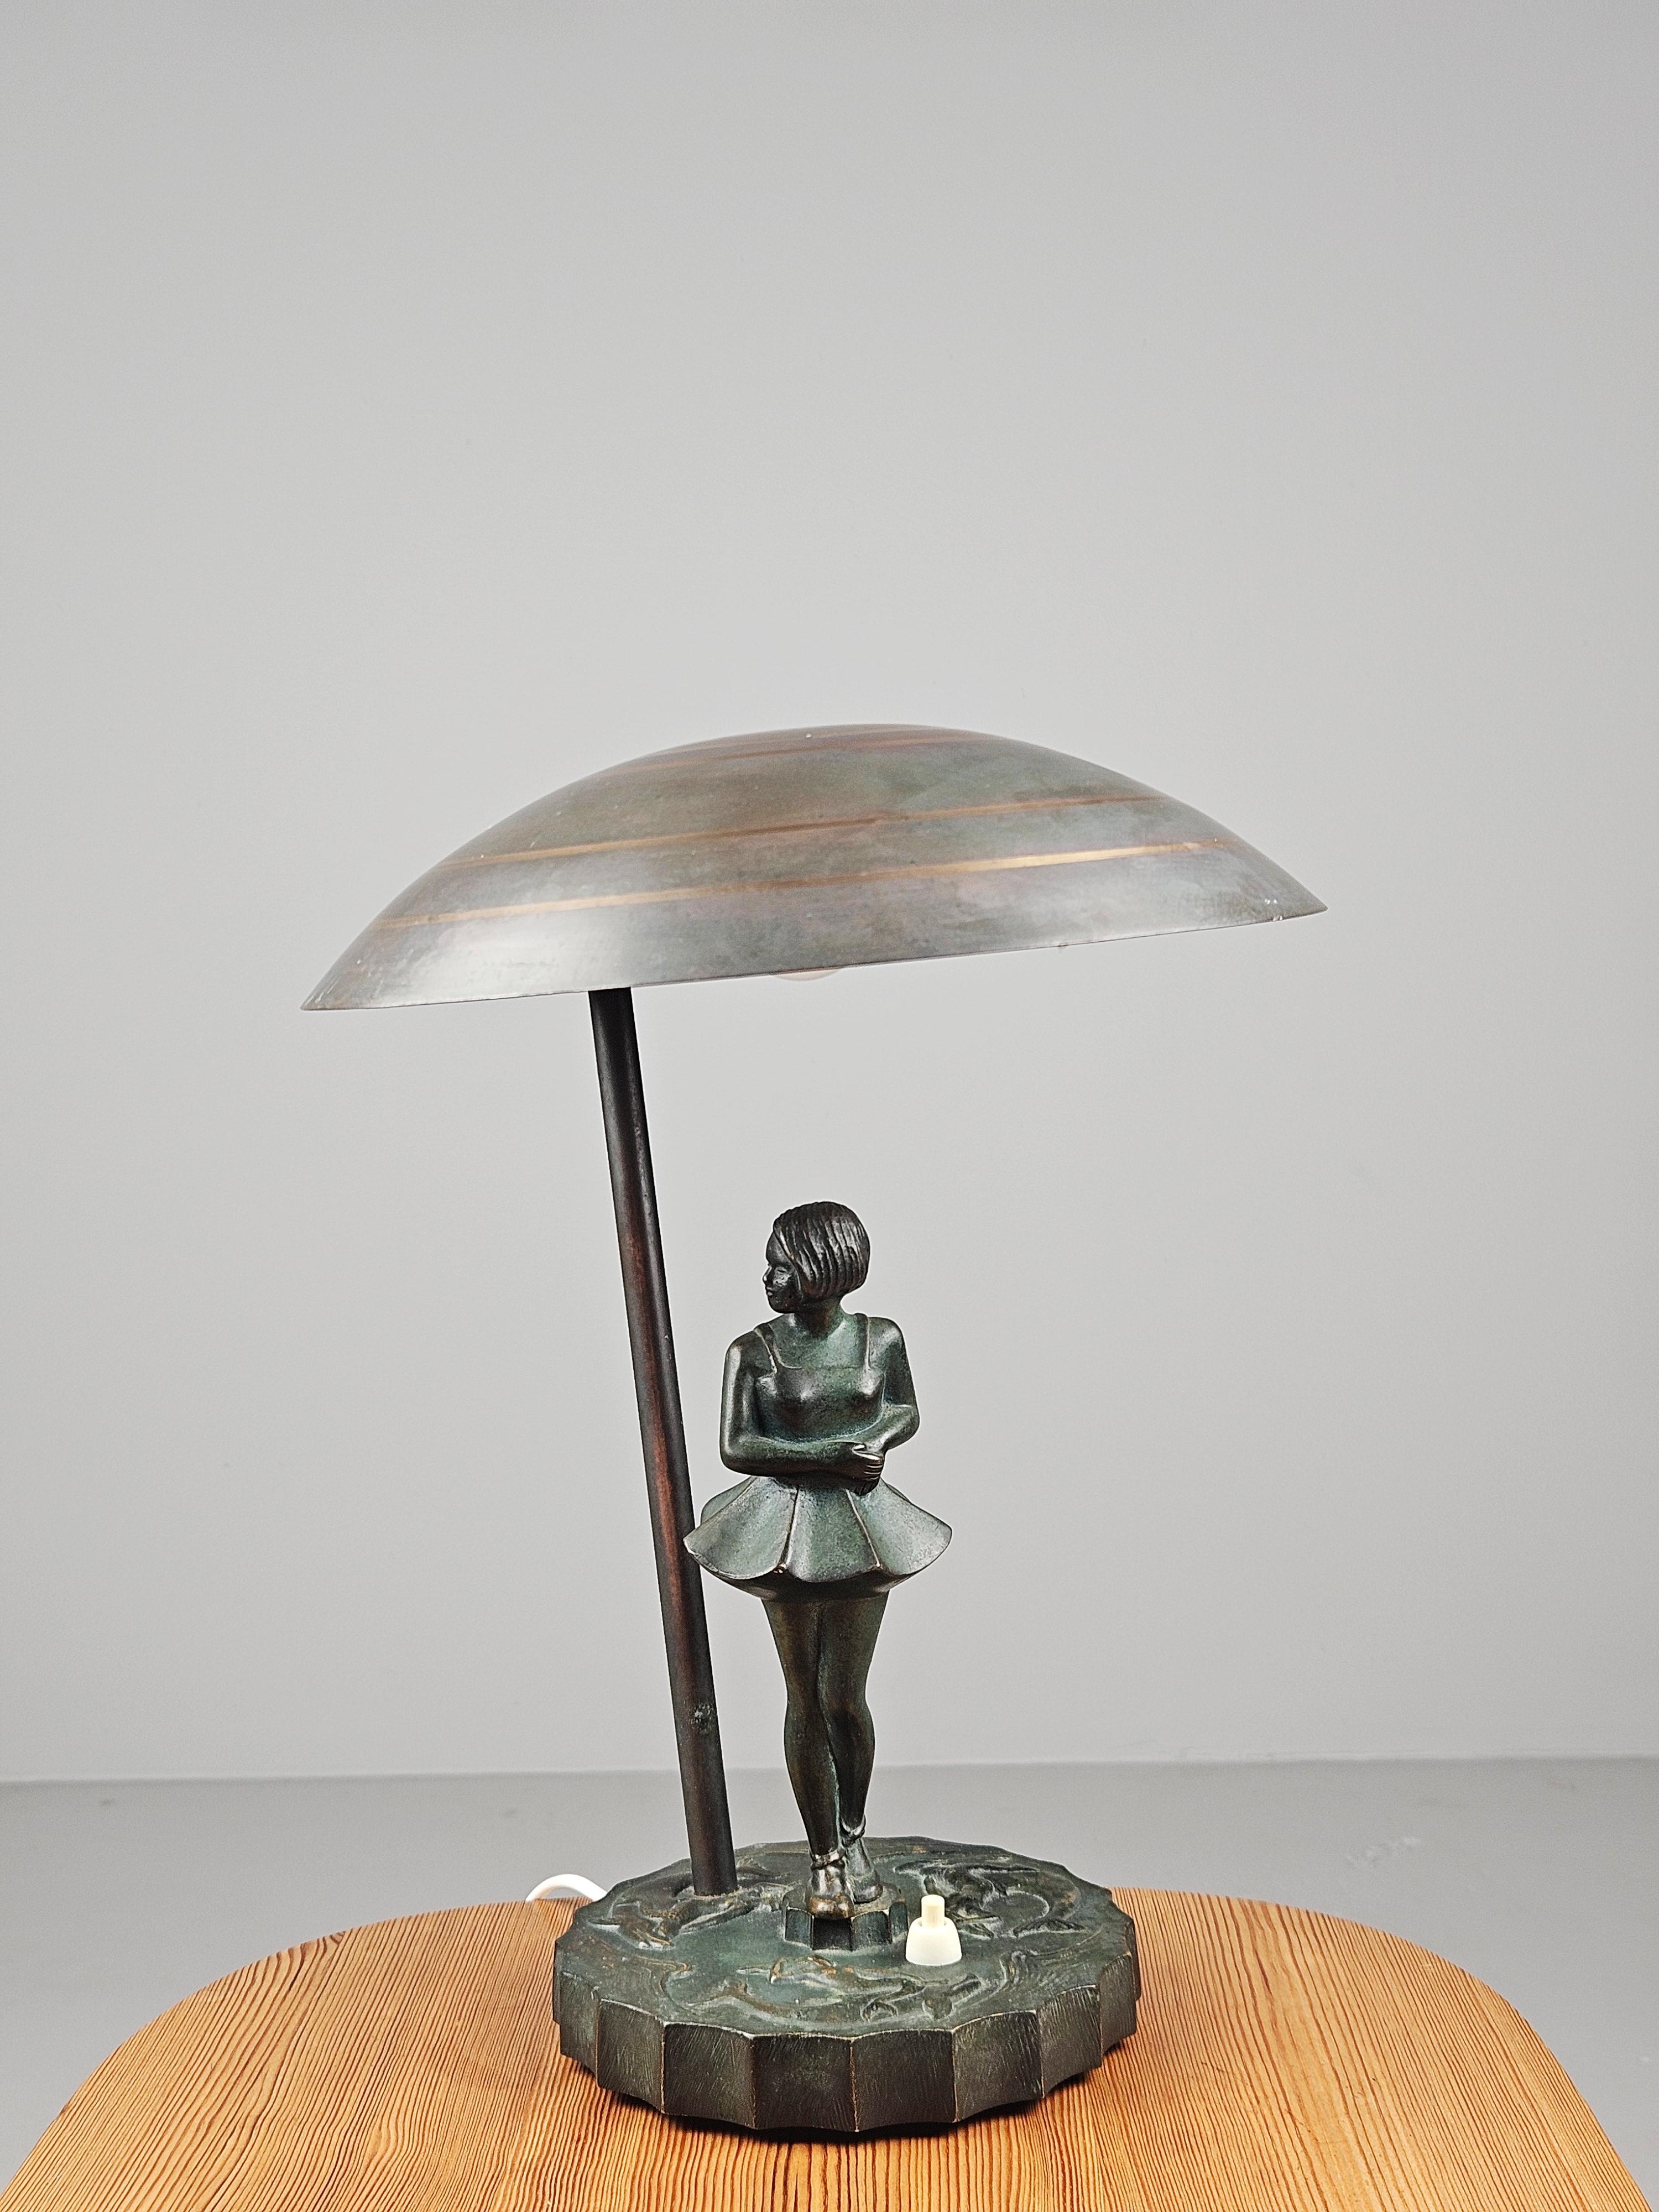 Schöne und seltene Bronze-Tischlampe, hergestellt von der Malmö Metallvarufabrik in den 1940er Jahren.

Wahrlich ein Stück der so genannten schwedischen Anmut. 

Hergestellt in Bronze. 